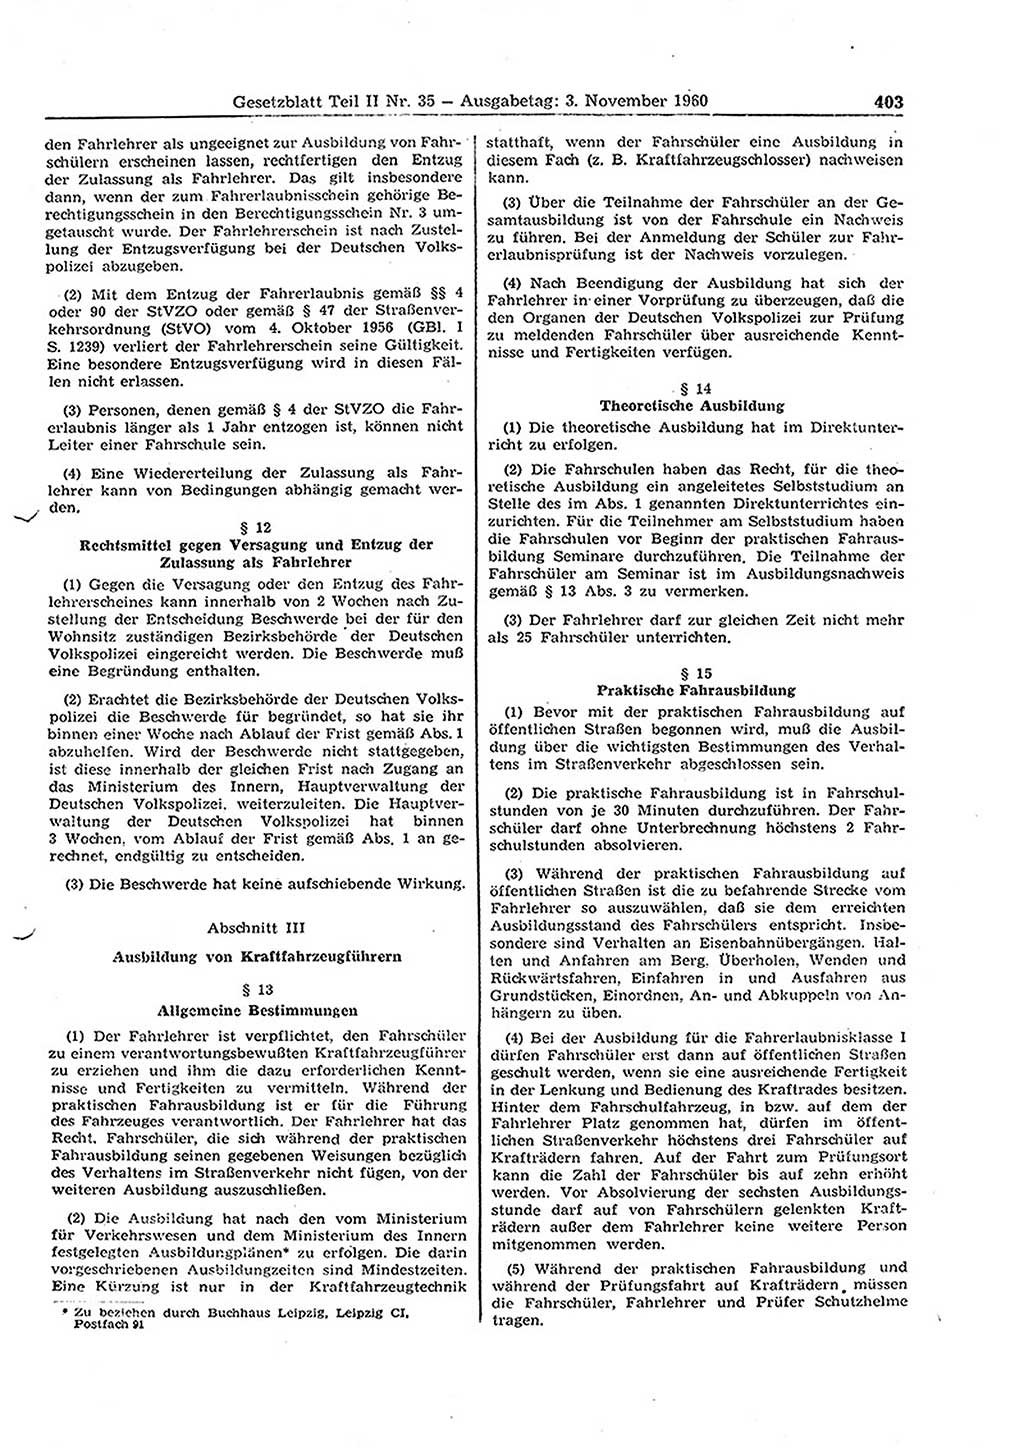 Gesetzblatt (GBl.) der Deutschen Demokratischen Republik (DDR) Teil ⅠⅠ 1960, Seite 403 (GBl. DDR ⅠⅠ 1960, S. 403)